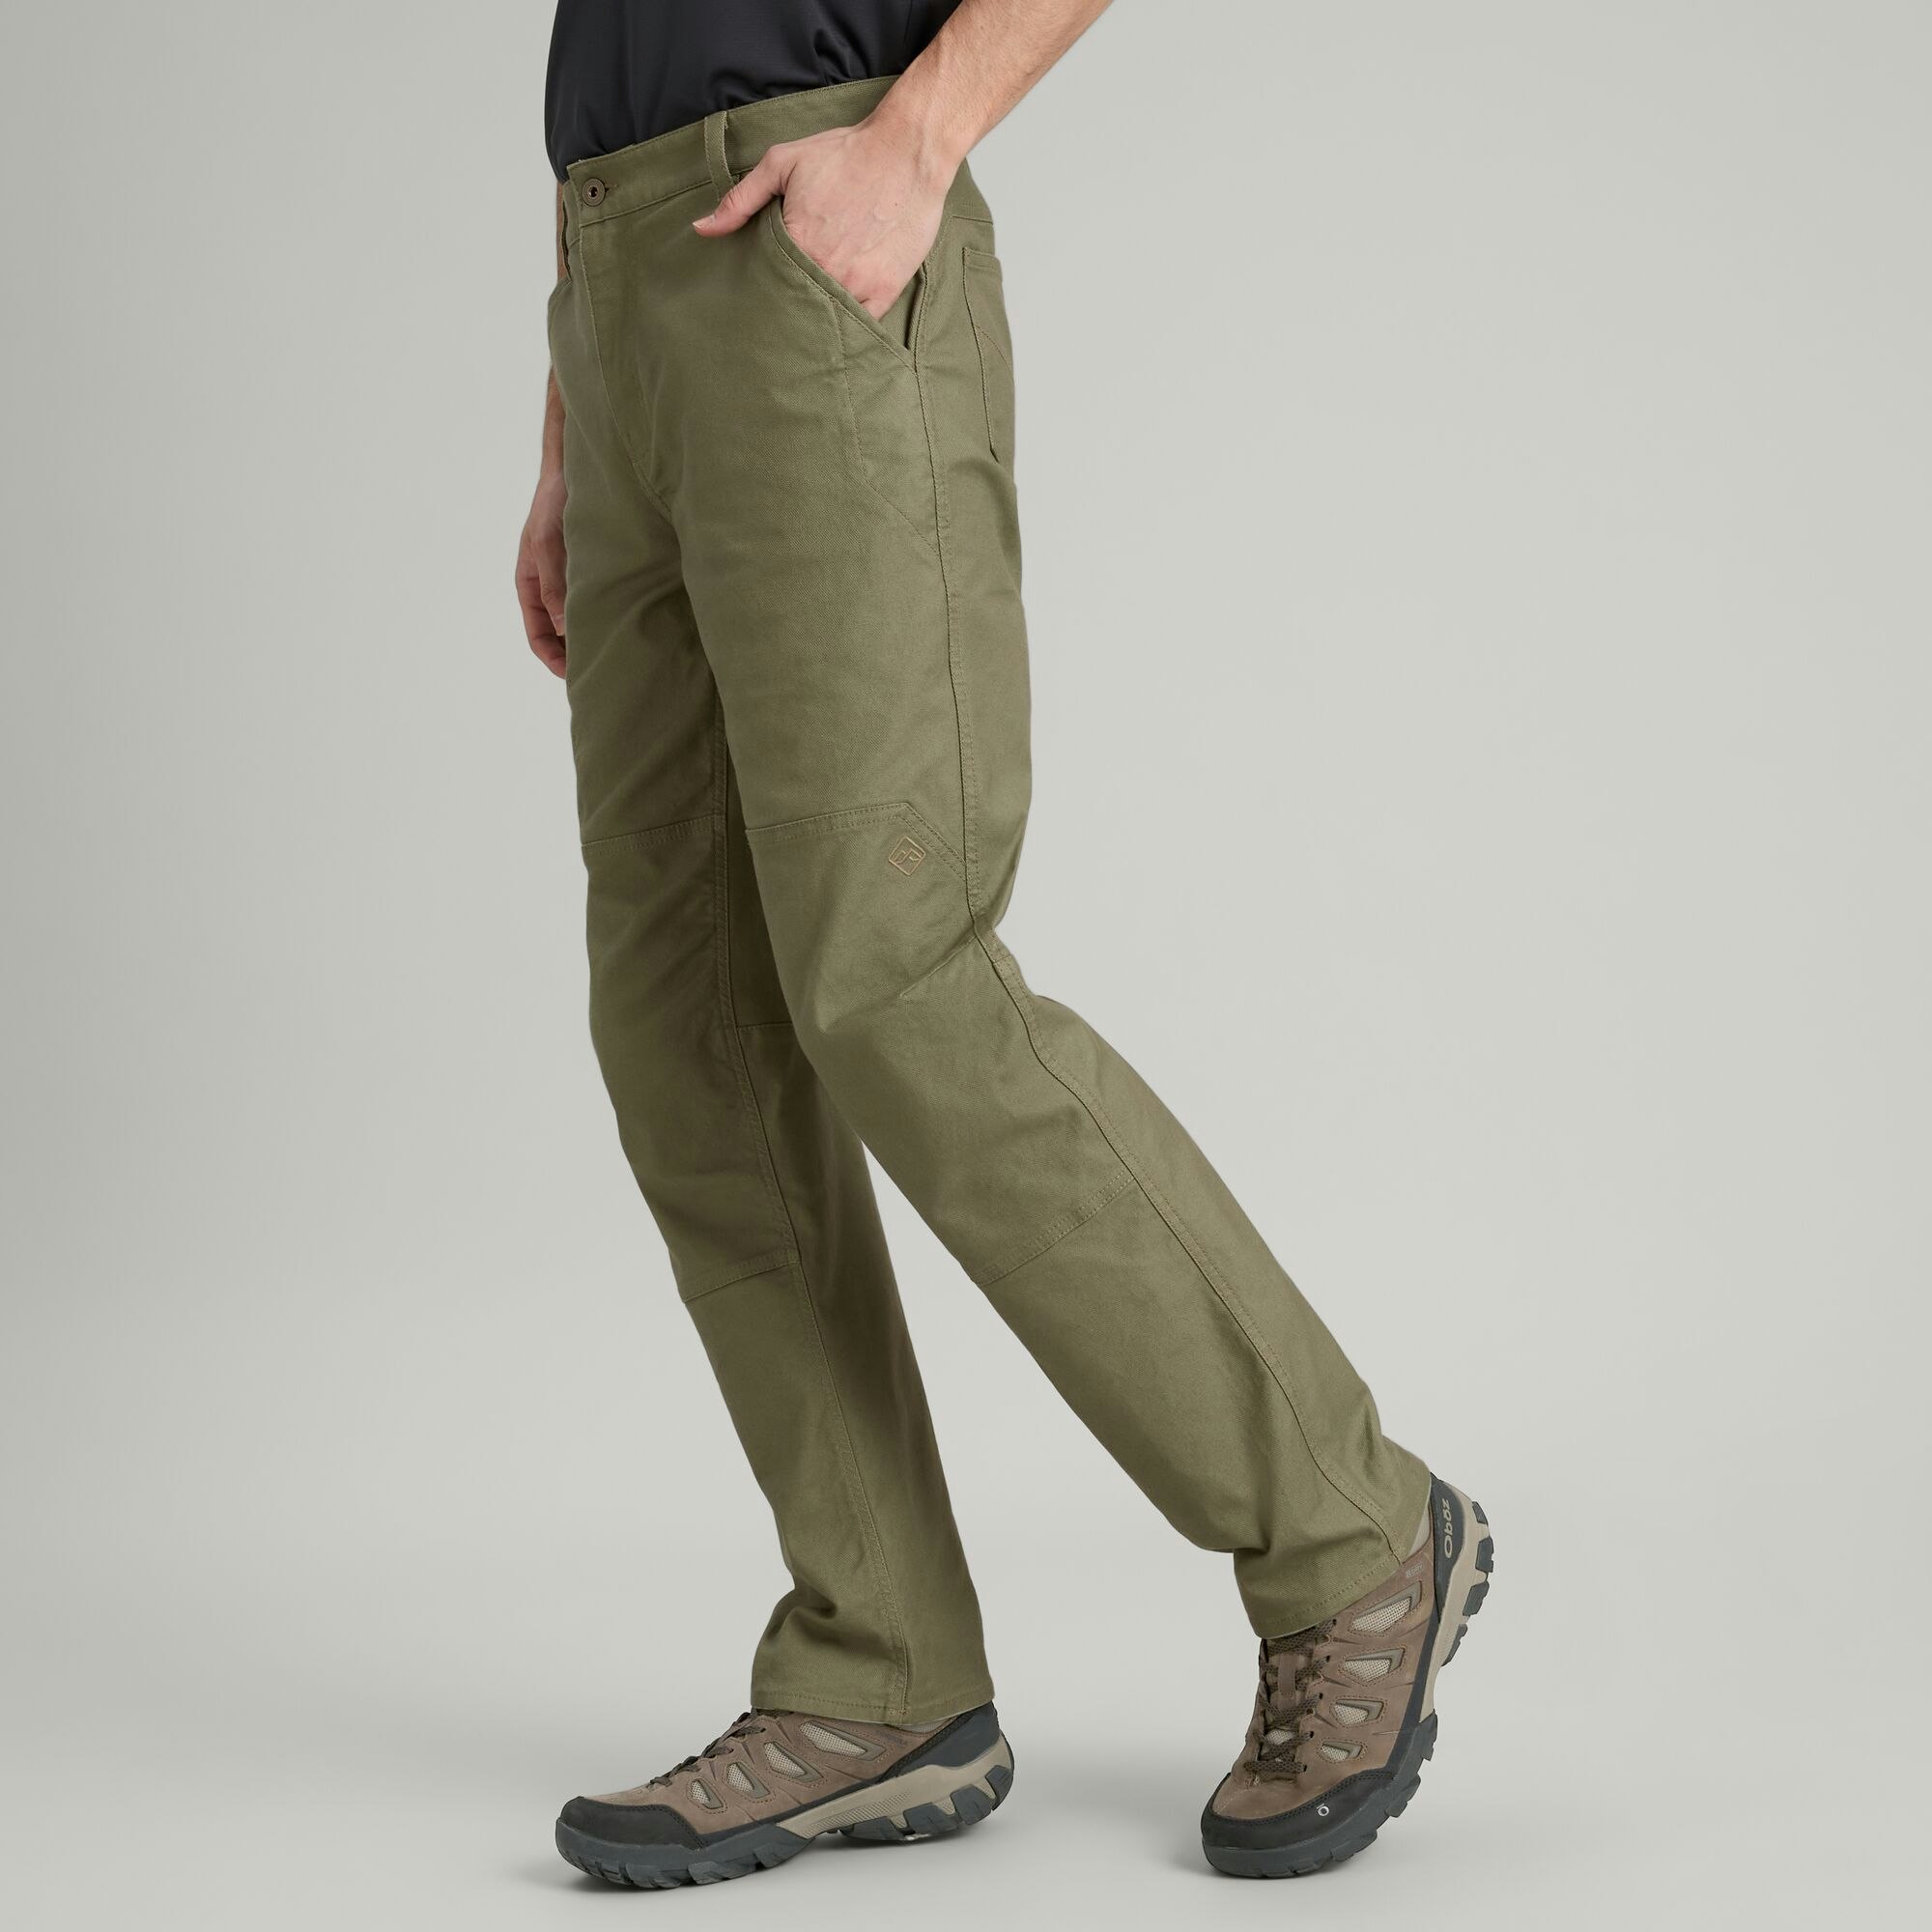 Kathmandu Cargo Pants Women Size 10 Grey Zip Close Outdoor Pockets Hiking  Casual